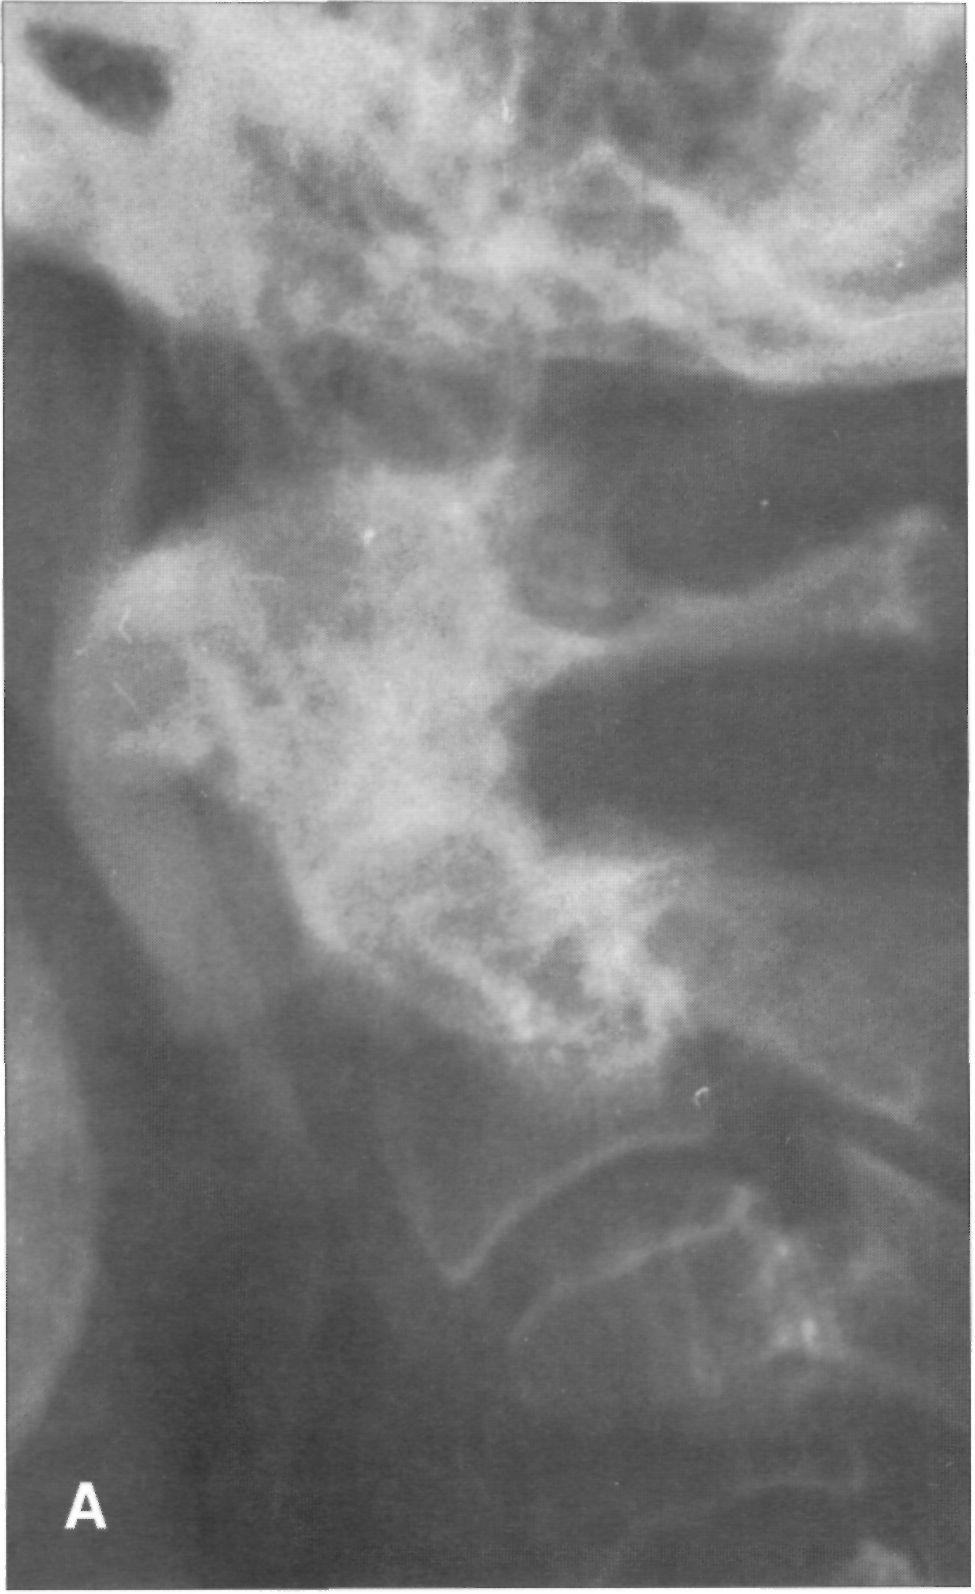 TAC: Fractura bilateral a nivel posterior del soma de C2, representando una variante de la fractura de Hangman; en lugar de afectar los pedículos, la fractura es somática.